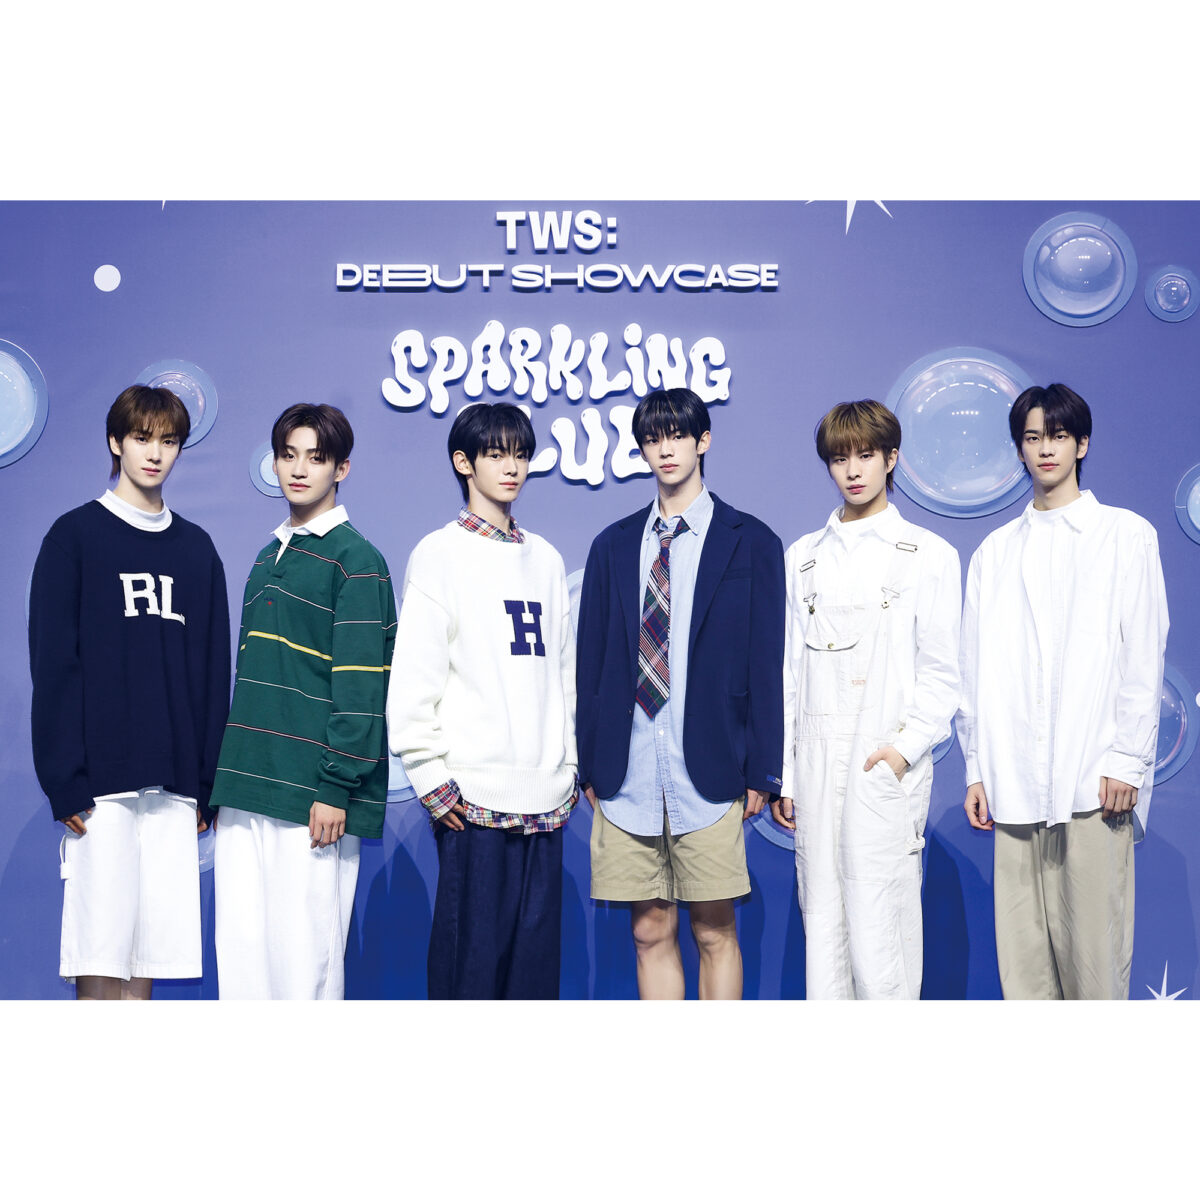 SEVENTEENの弟分グループ「TWS（トゥアス）」がついにデビュー。韓国で開催...